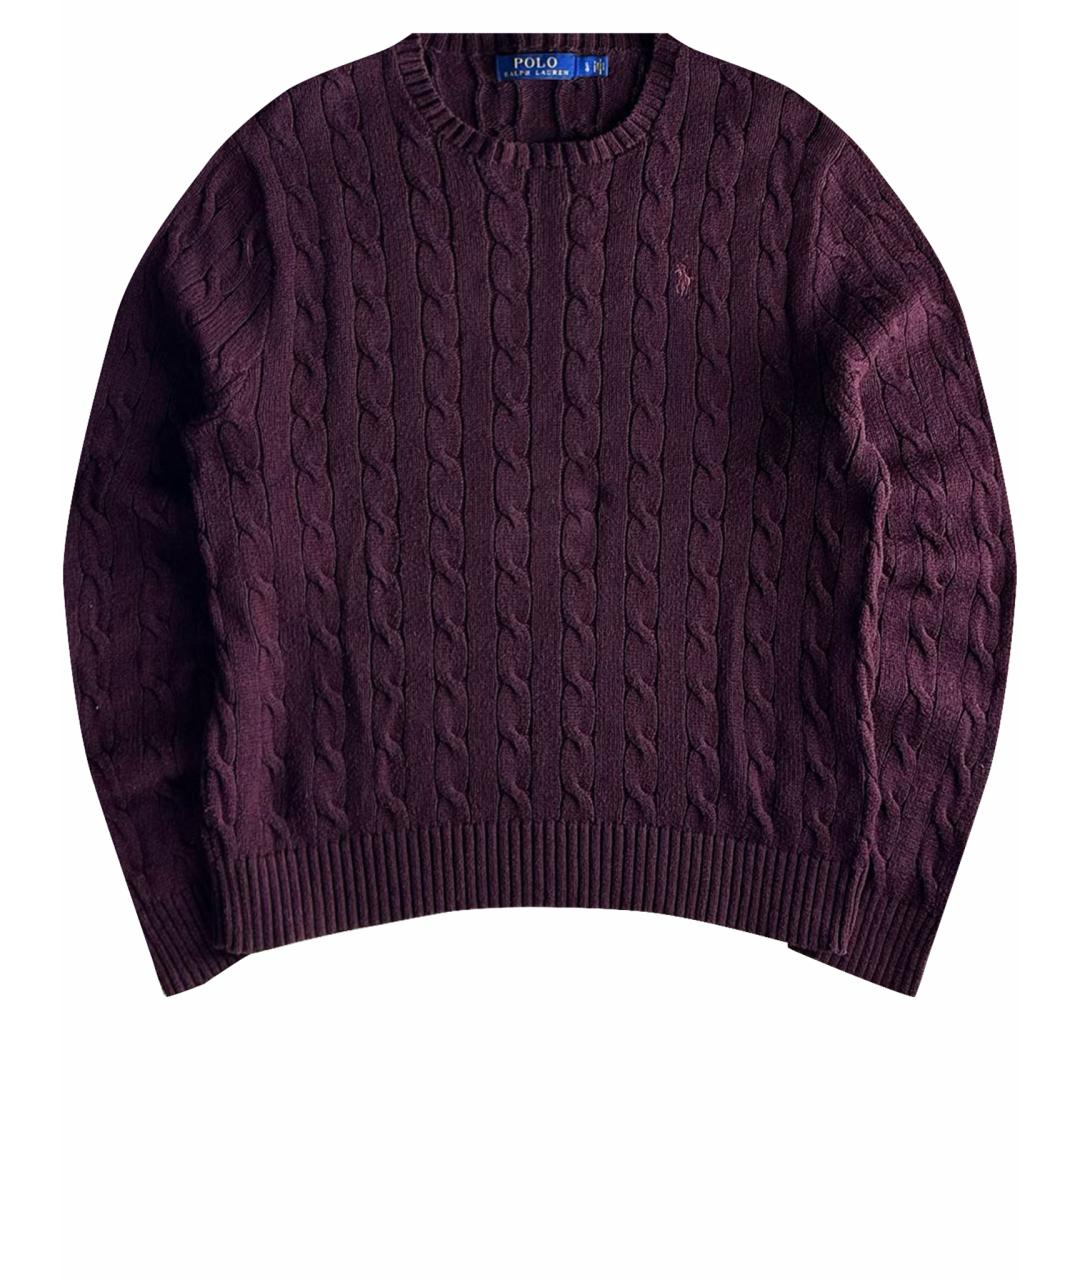 POLO RALPH LAUREN Бордовый хлопковый джемпер / свитер, фото 1